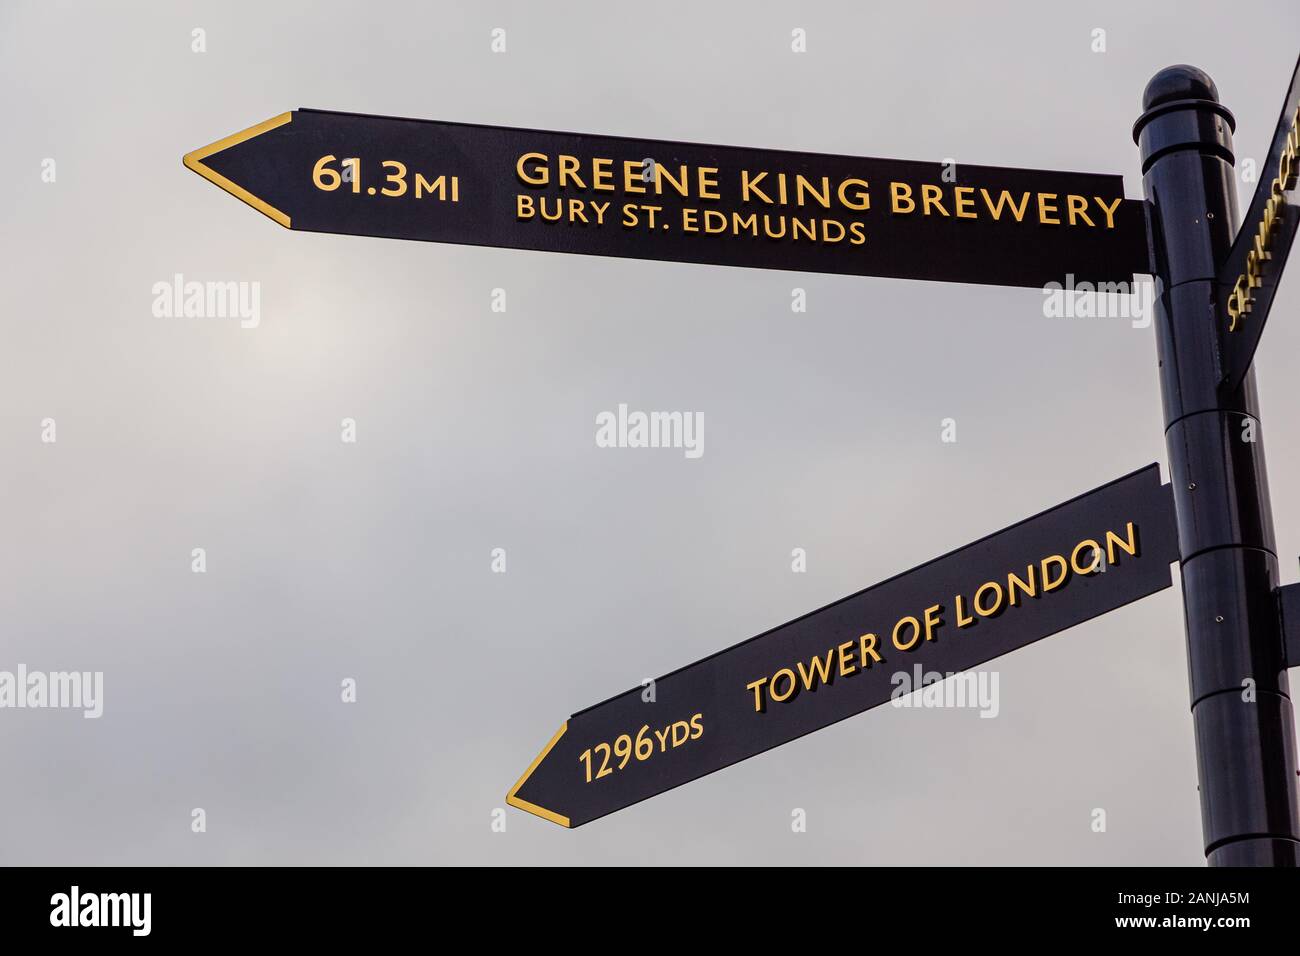 Londres, Reino Unido - 2 de enero de 2020: Algunos signos de Londres indican la distancia a los lugares más famosos Foto de stock